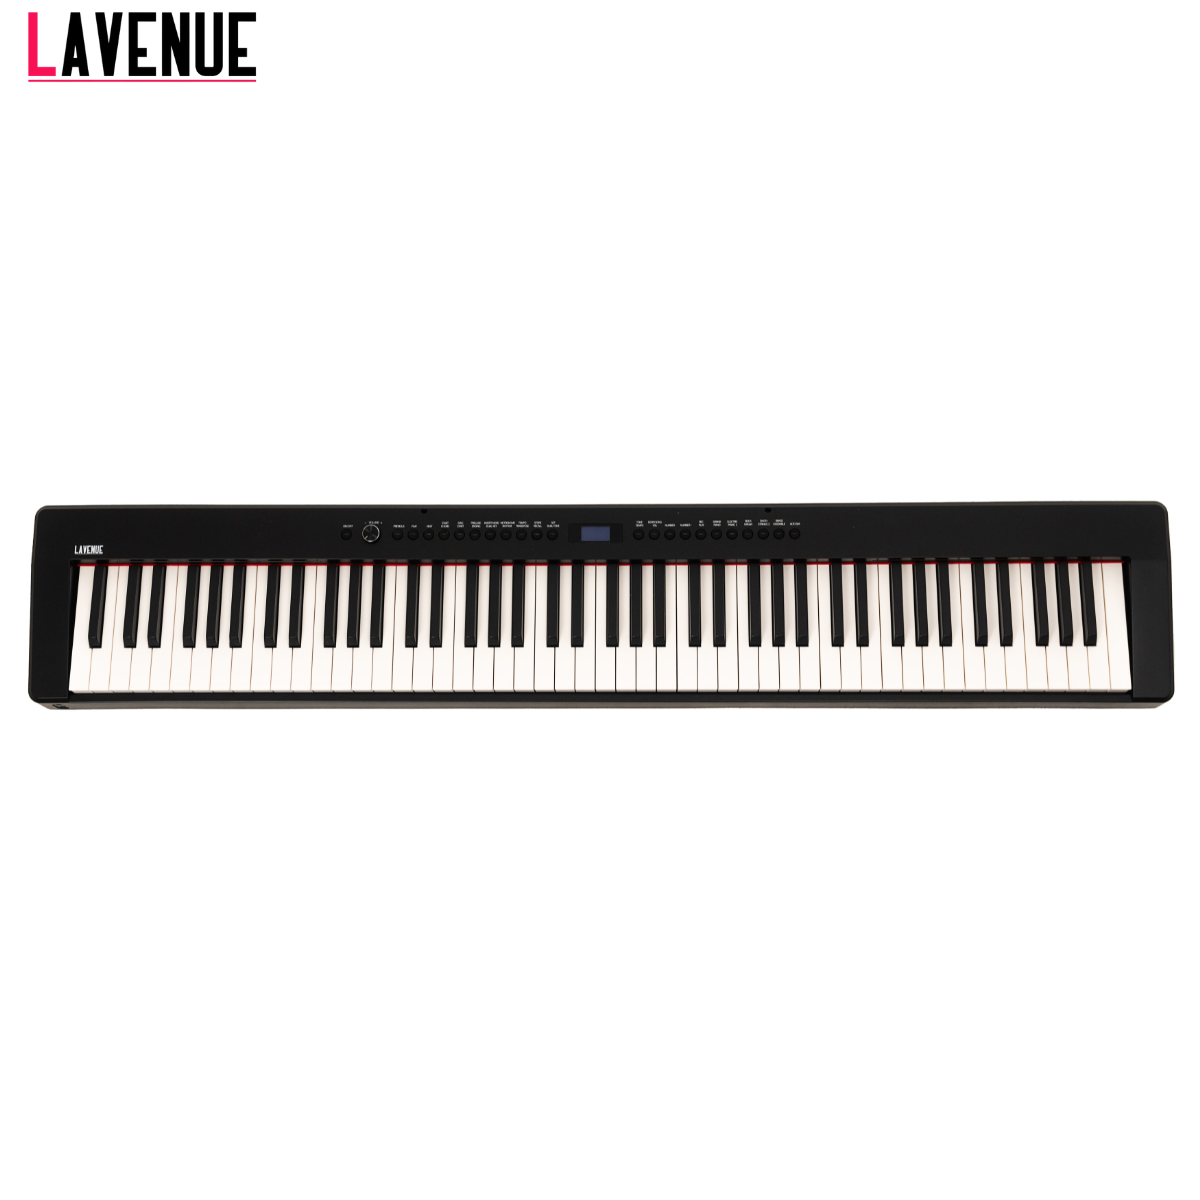 Цифровое пианино LAVENUE Nocturne BK (C-811) с тремя педалями (деревянная стойка опционально)